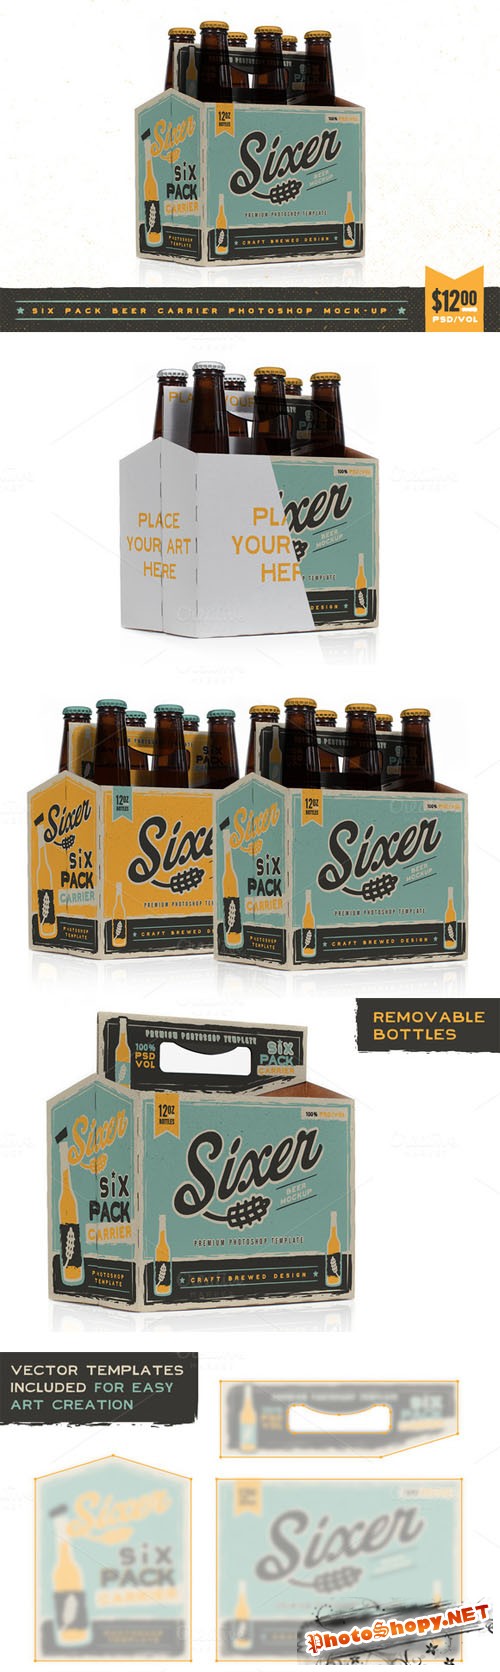 CreativeMarket - Six pack beer bottle carrier Mock-Up